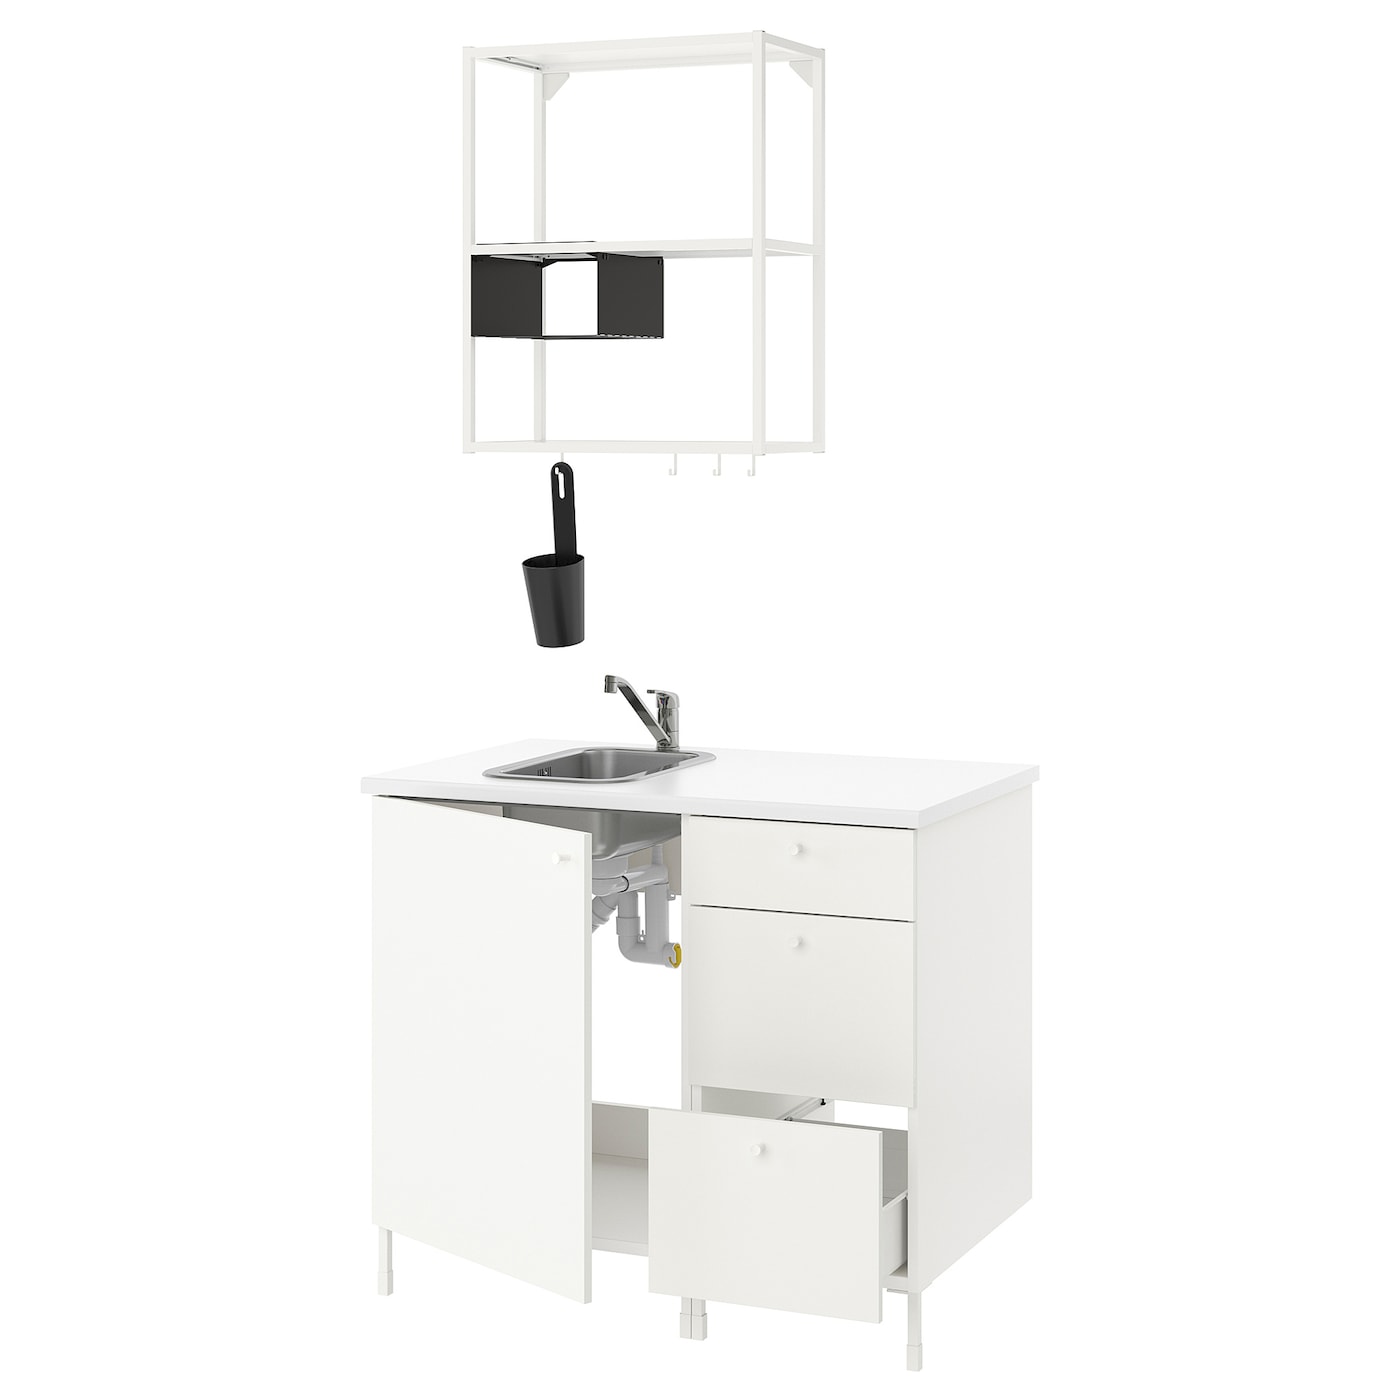 Комбинация шкафов для прачечной и кухни - ENHET  IKEA/ ЭНХЕТ ИКЕА, 103x63,5x222 см, белый